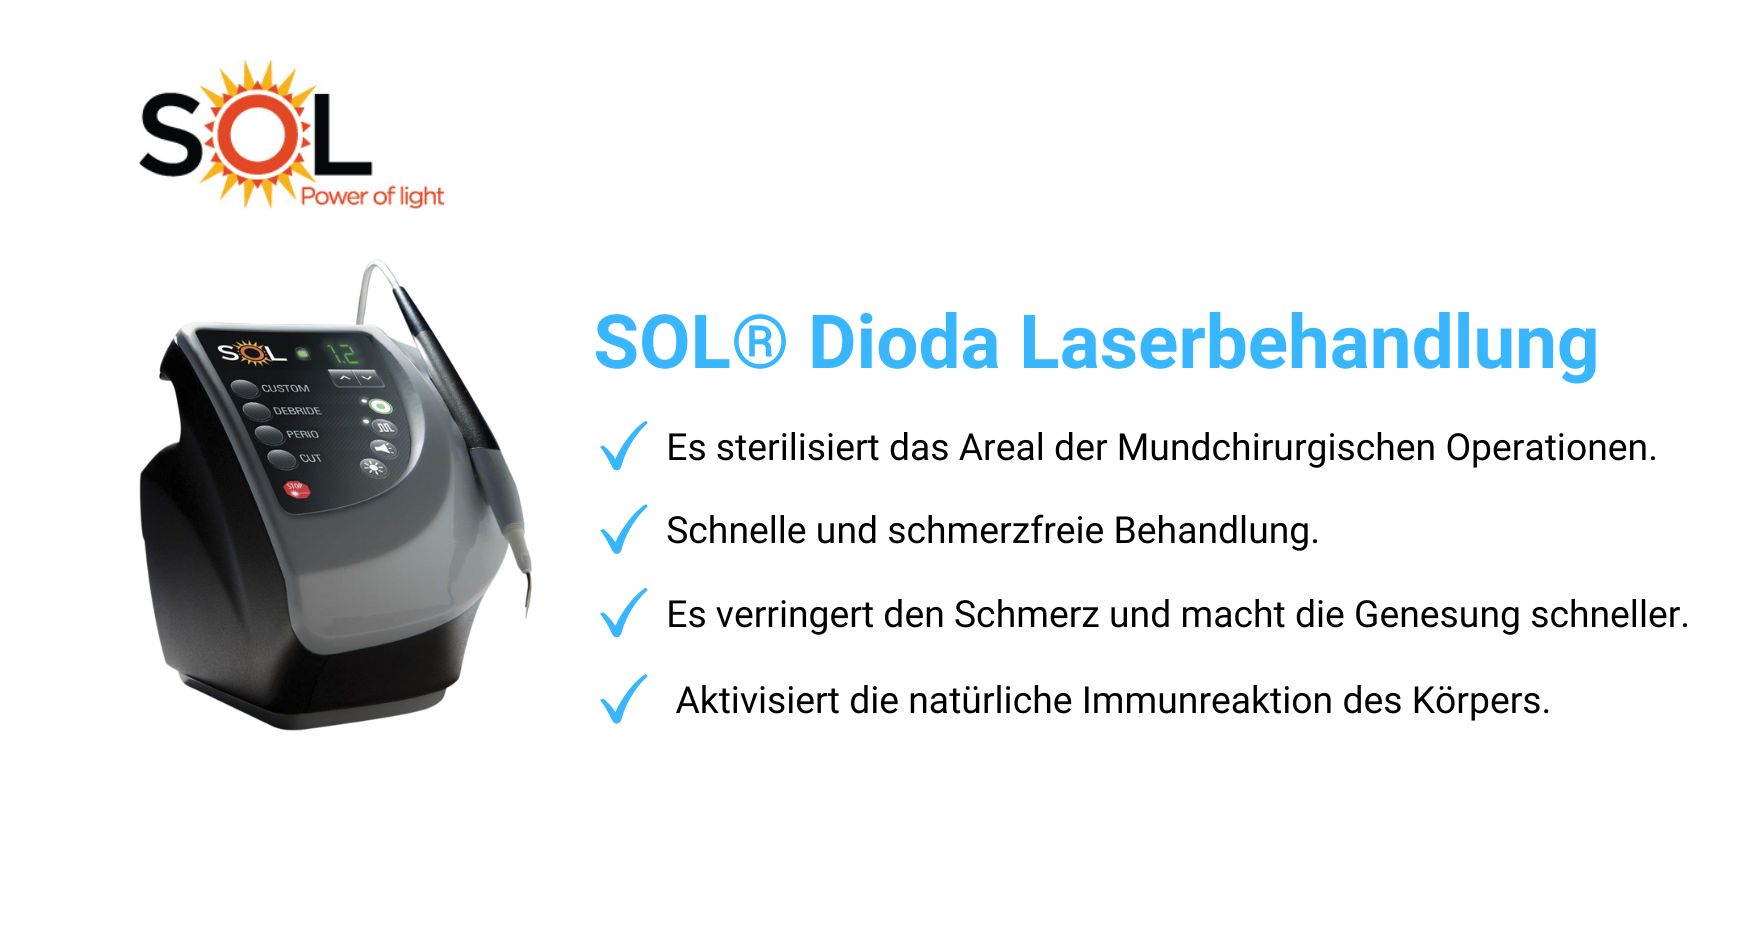 SOL® Dioda Laserbehandlung